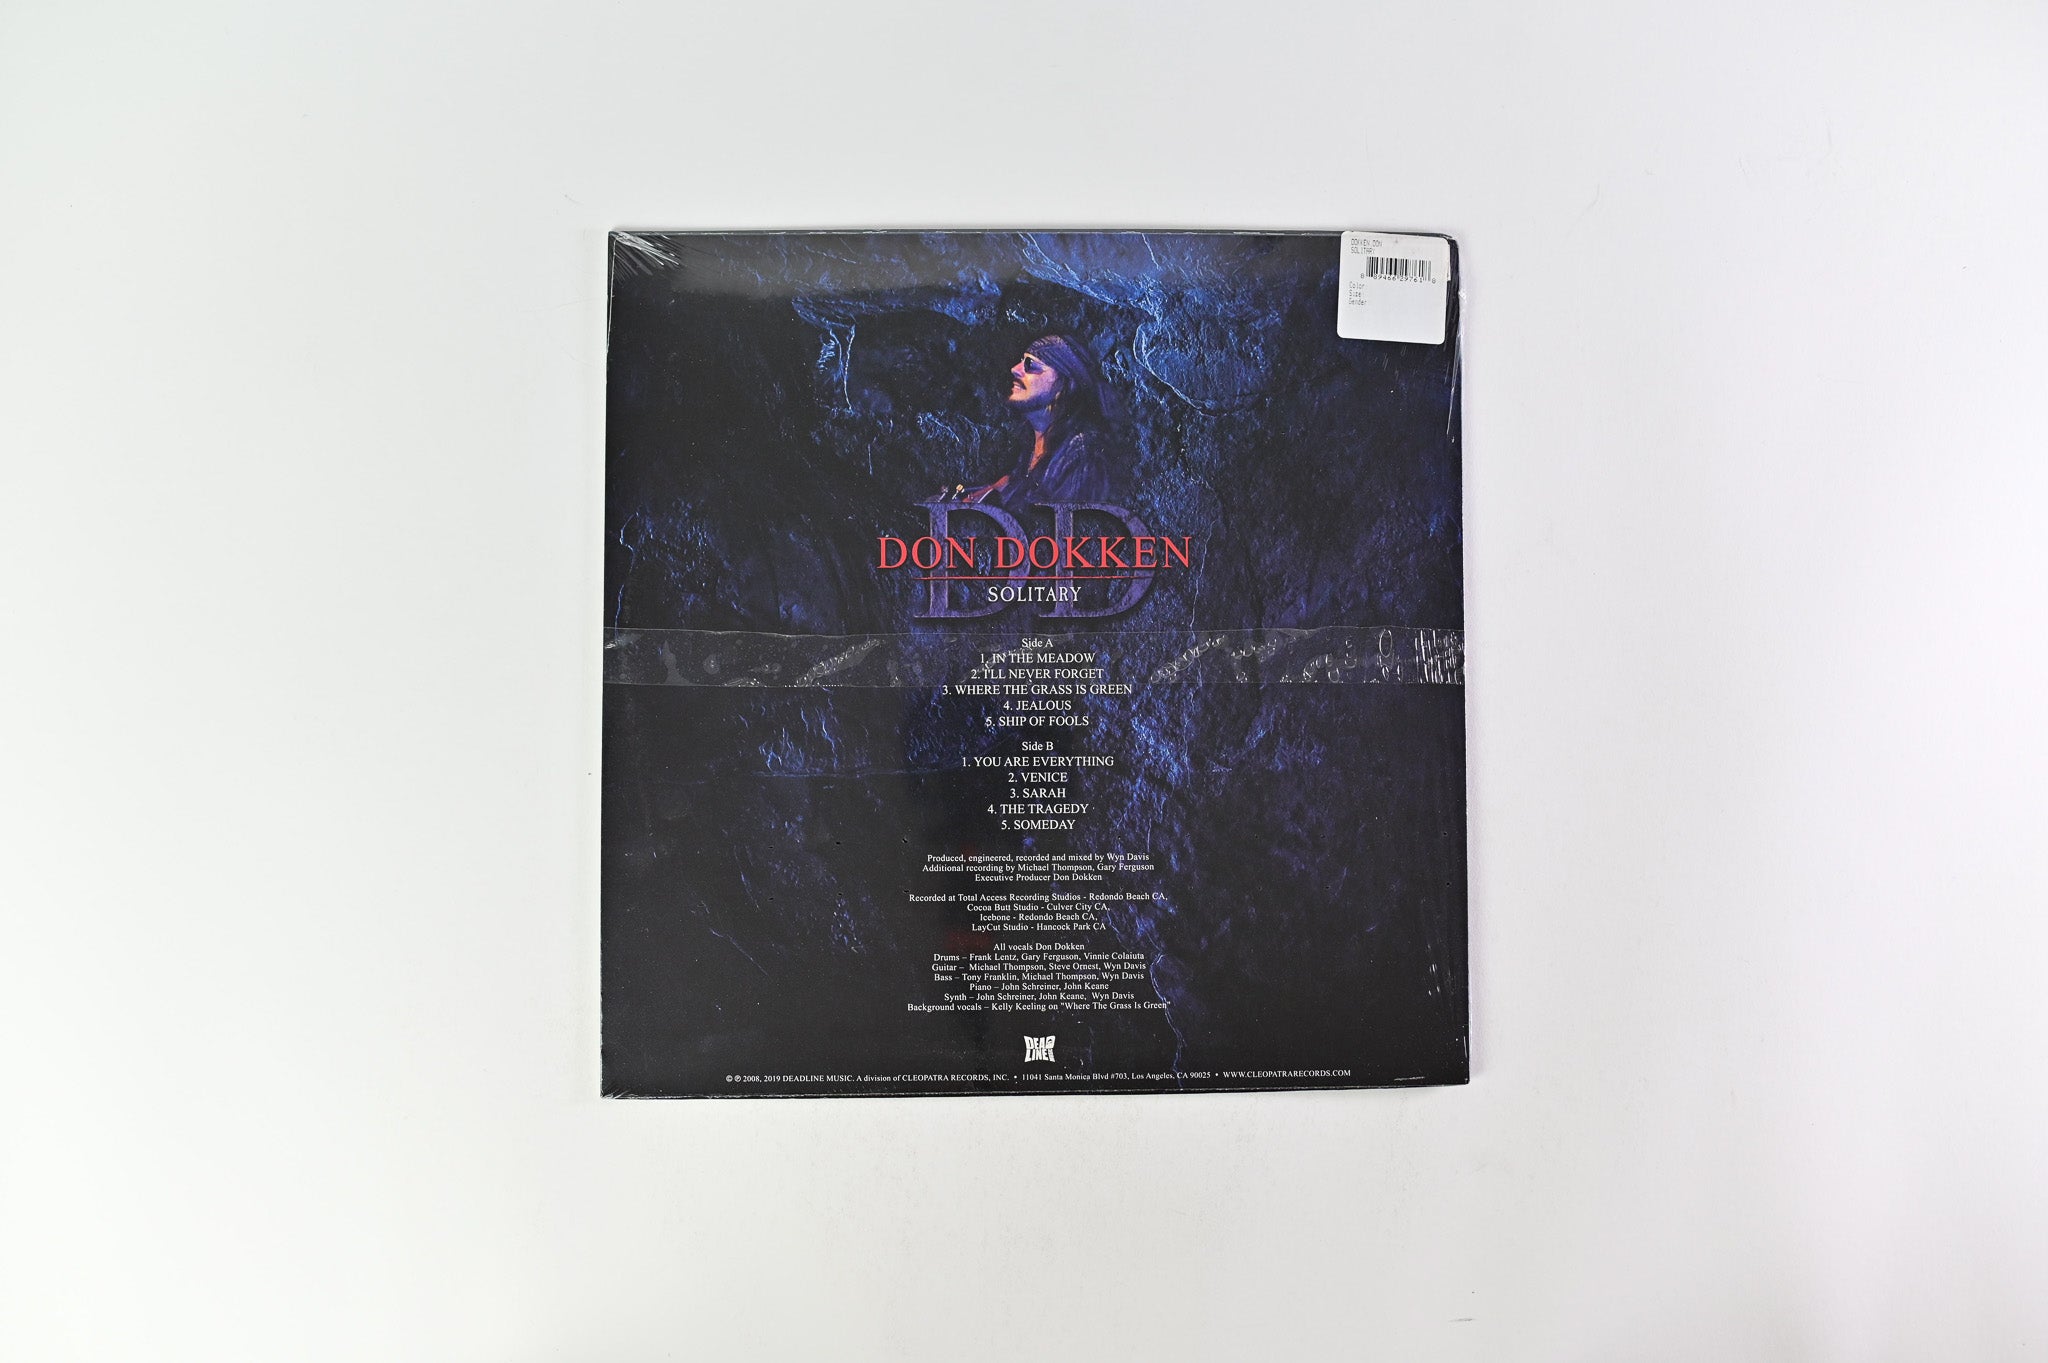 Don Dokken - Solitary on Deadline Music - White Vinyl - Sealed